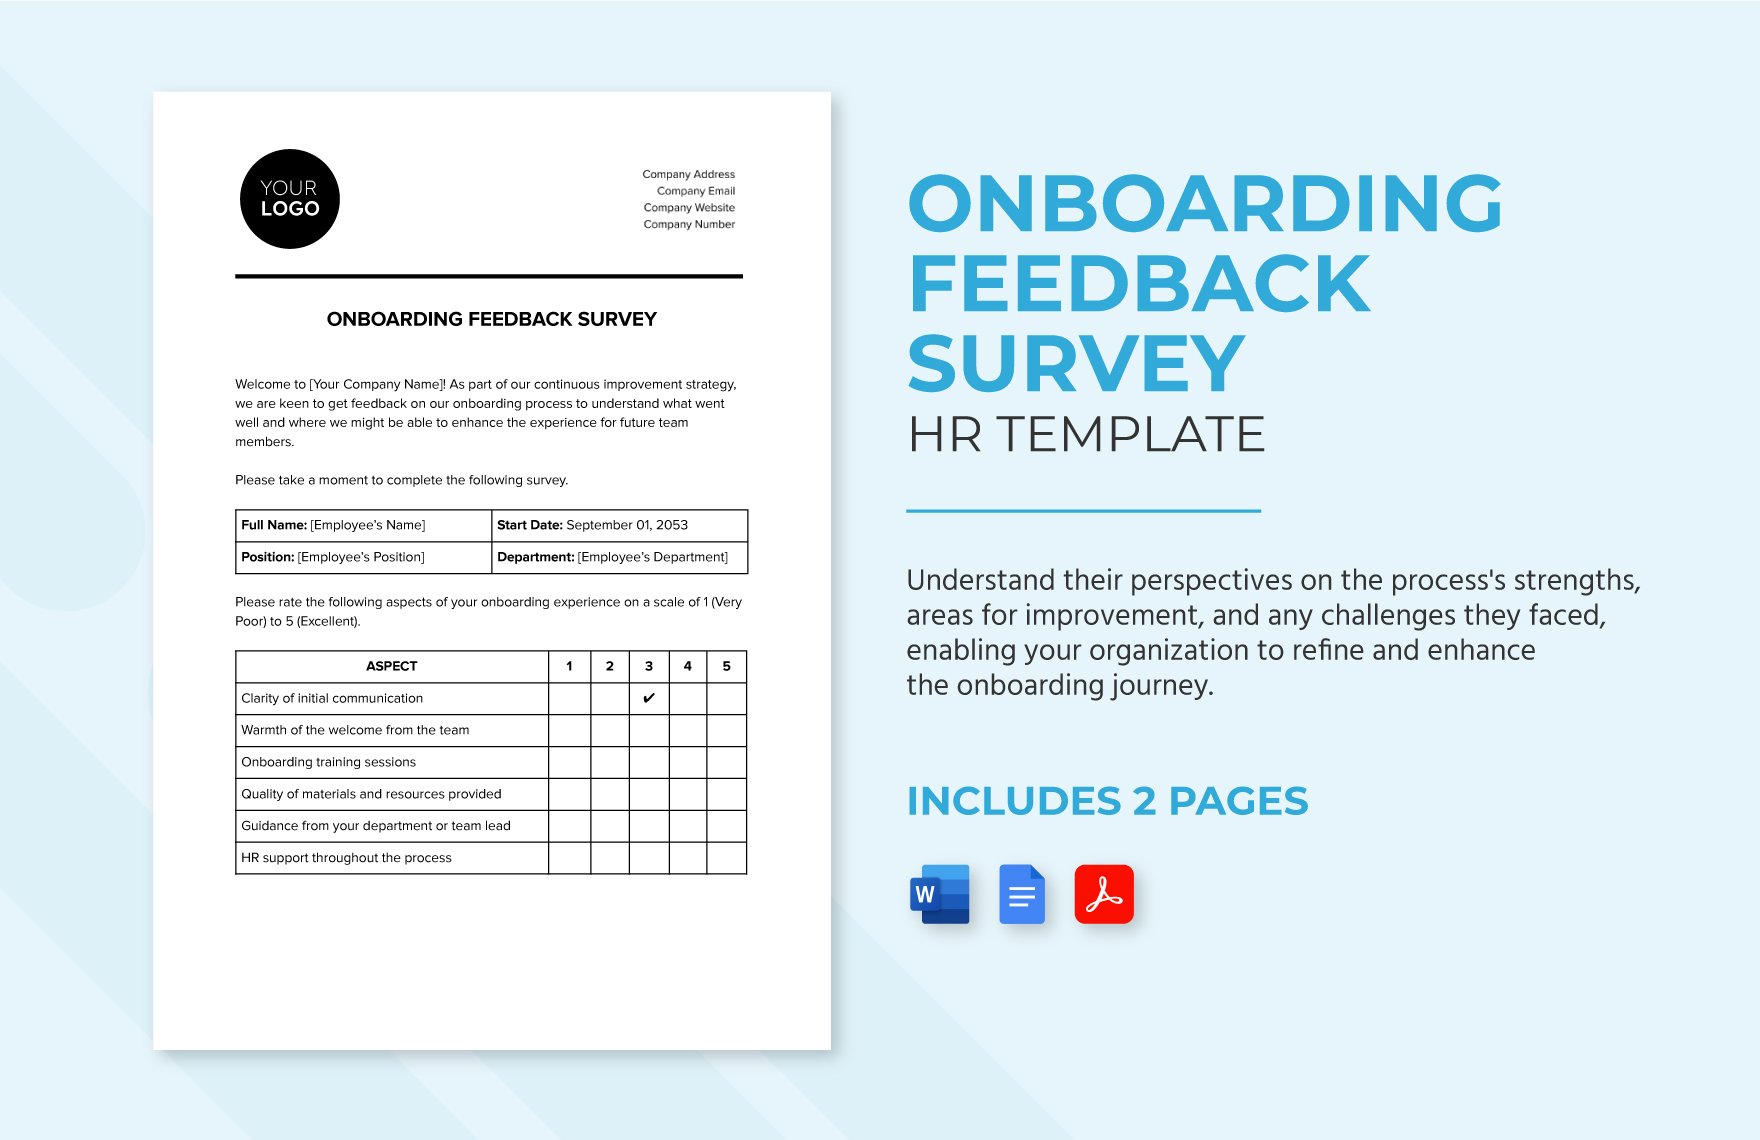 Onboarding Feedback Survey HR Template